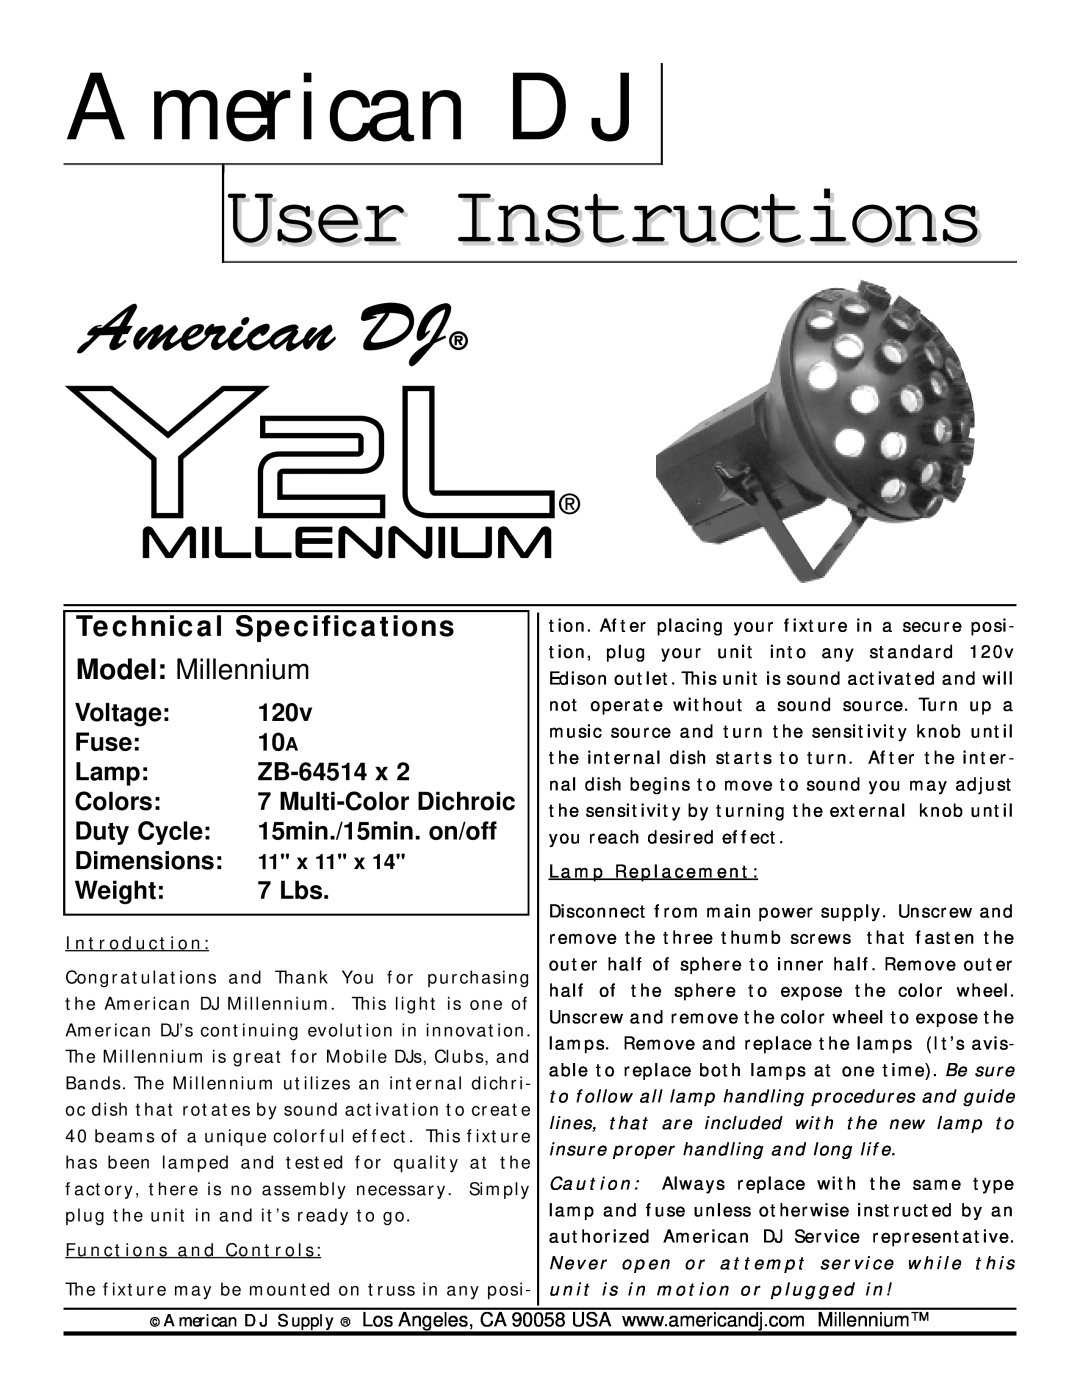 3D Connexion Y2L technical specifications American DJ, User Instructions, Technical Specifications, Model Millennium, 120v 